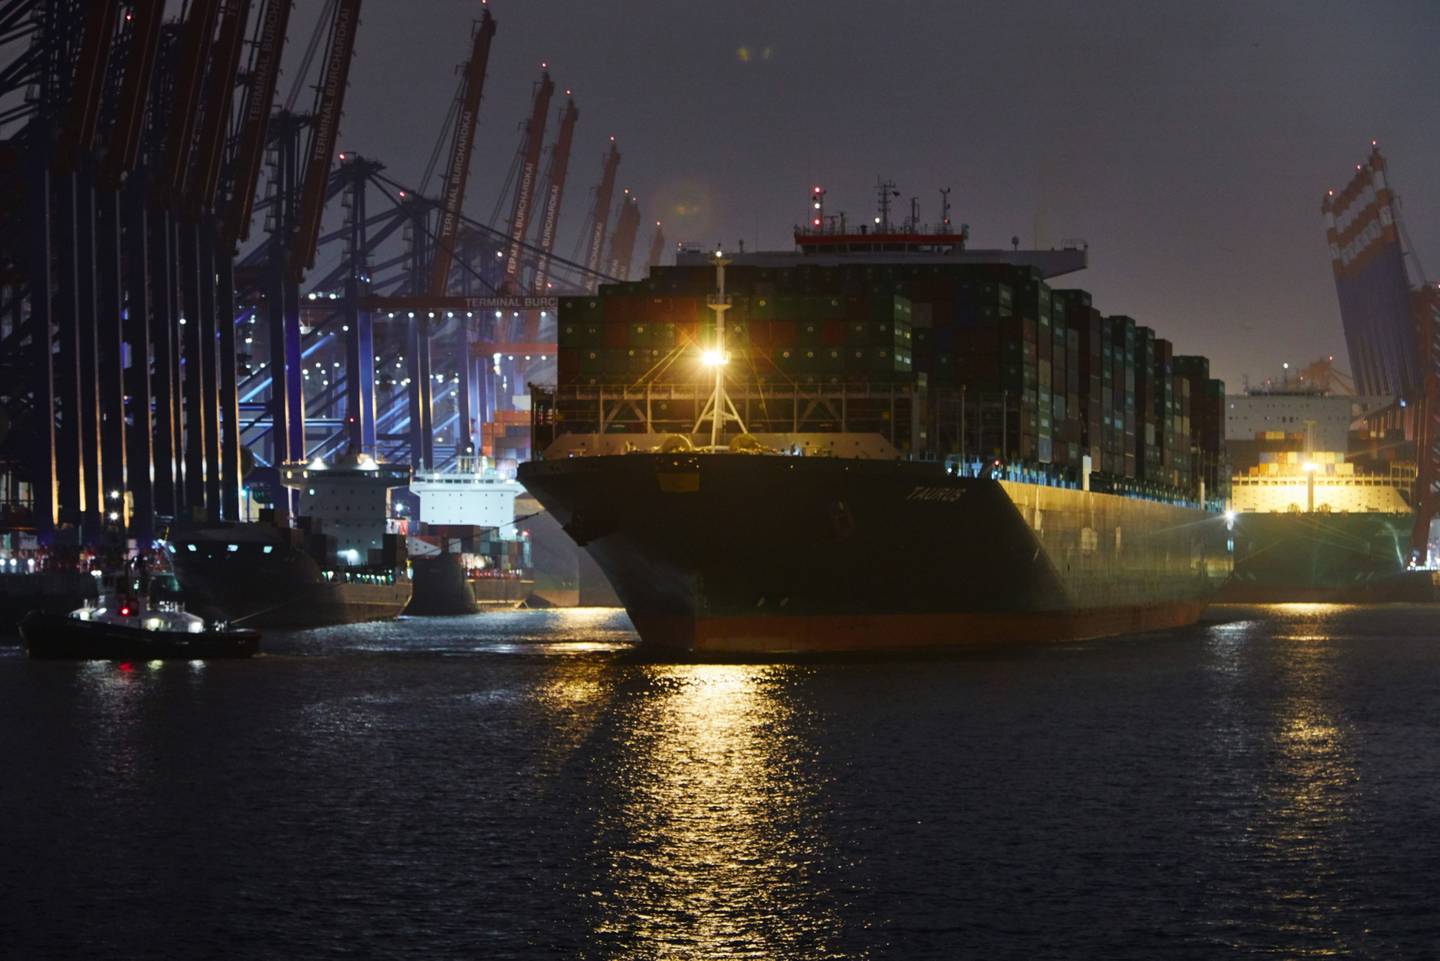 El buque portacontenedores Taurus, operado por Evergreen Marine Corp., con carga en el puerto de Hamburgo por la noche en Hamburgo, Alemania, el martes 10 de noviembre de 2020